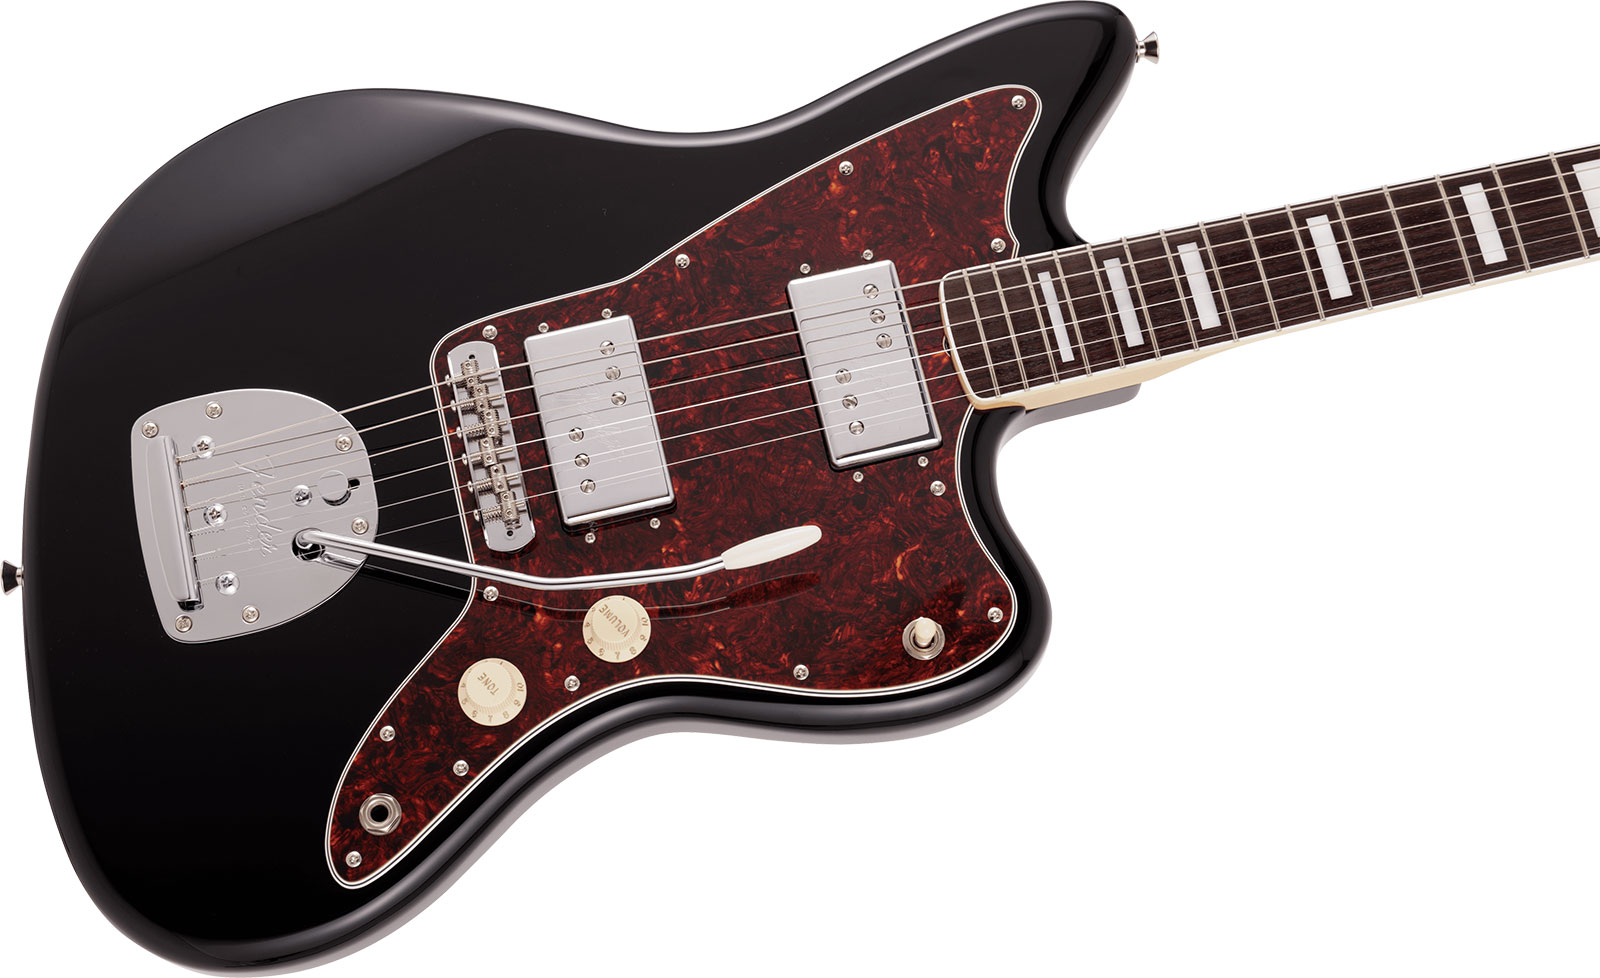 Fender Jazzmaster 60s Hh Wide Range Cunife Mij Traditional Jap 2h Trem Rw - Black - Guitare Électrique Double Cut - Variation 2